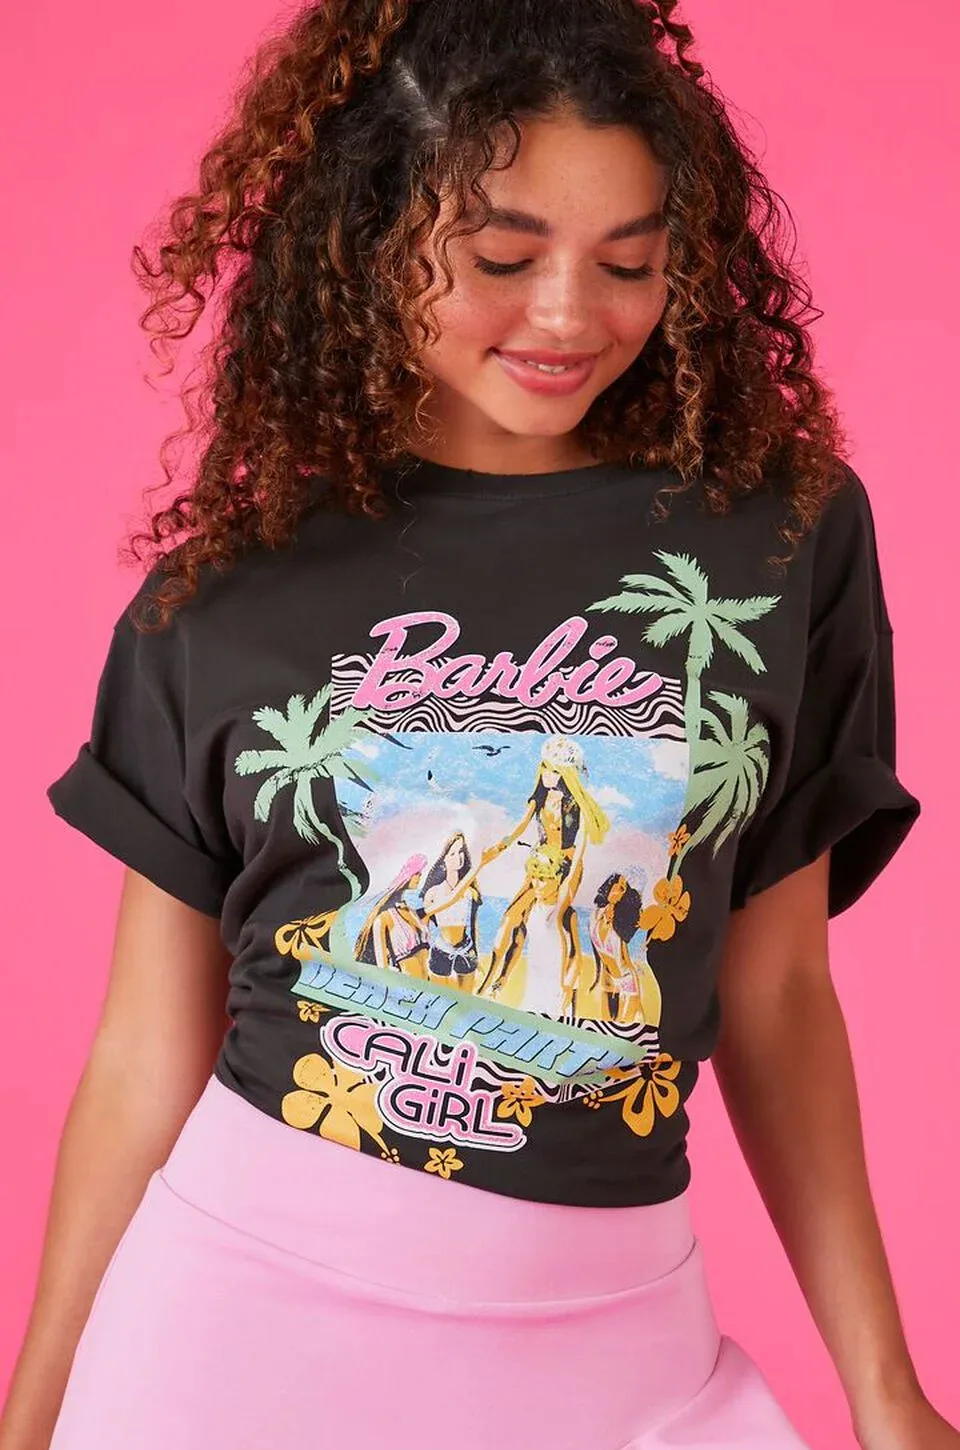 Forever 21 Barbie Logo Shirt Cali Girl